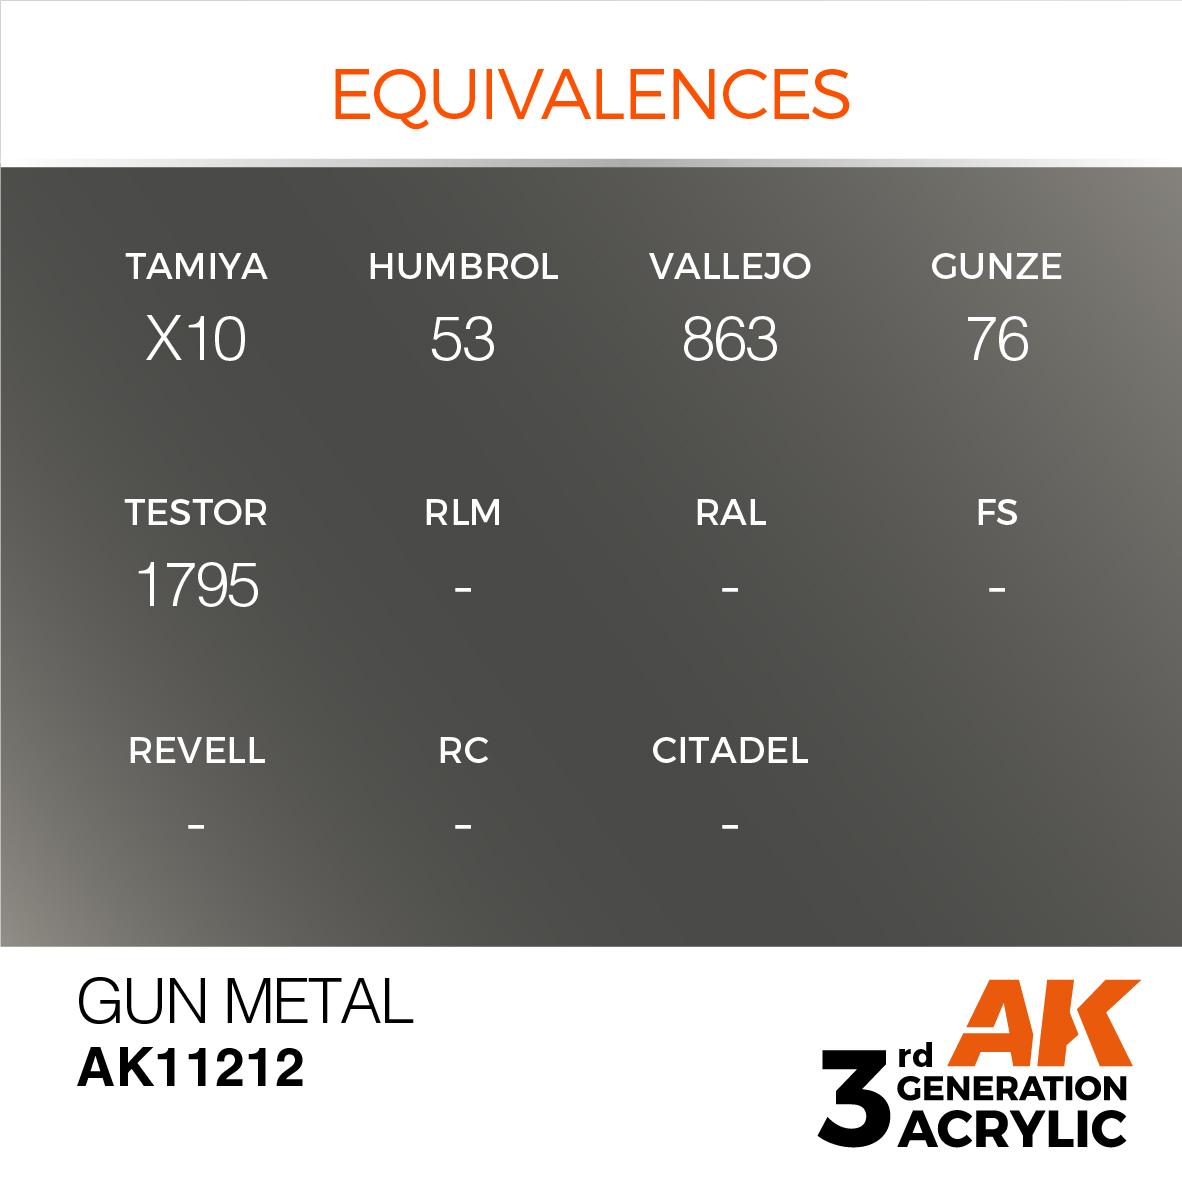 Gun Metall – Metallic